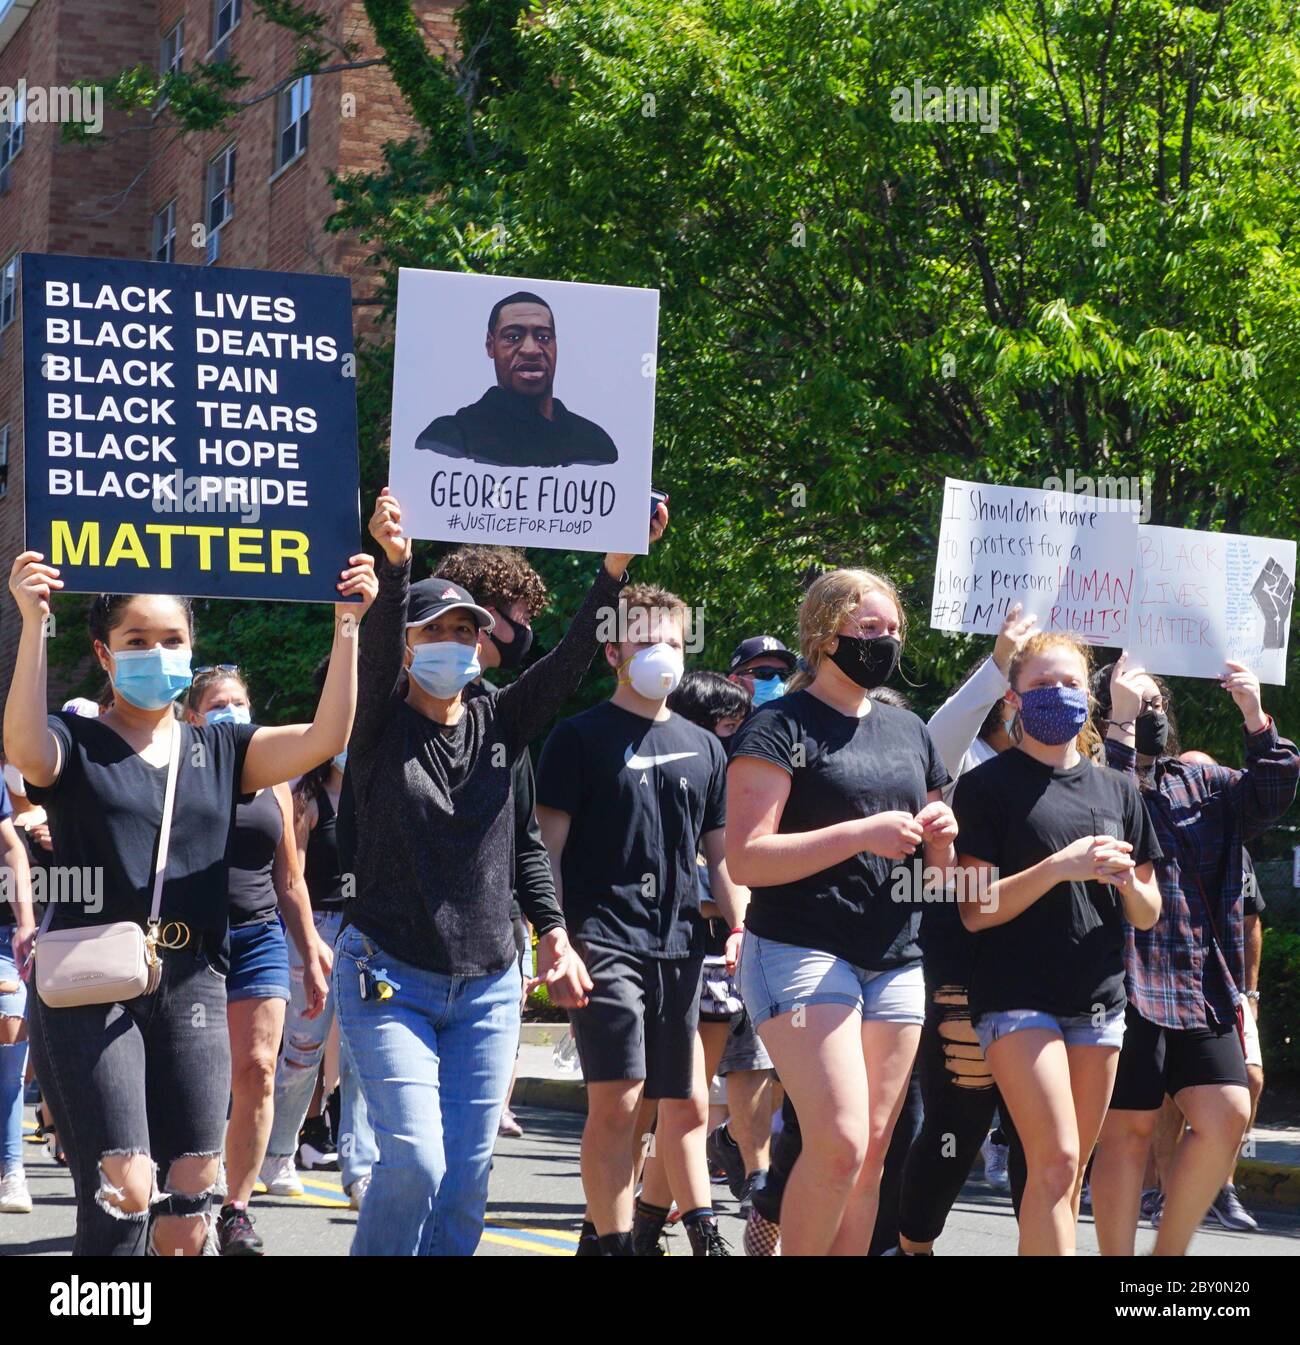 George Floyd Black Lives Matters protestataires- les manifestants défilent dans des fonds - Ridgefield Park, New Jersey USA - 8 juin 2020 Banque D'Images